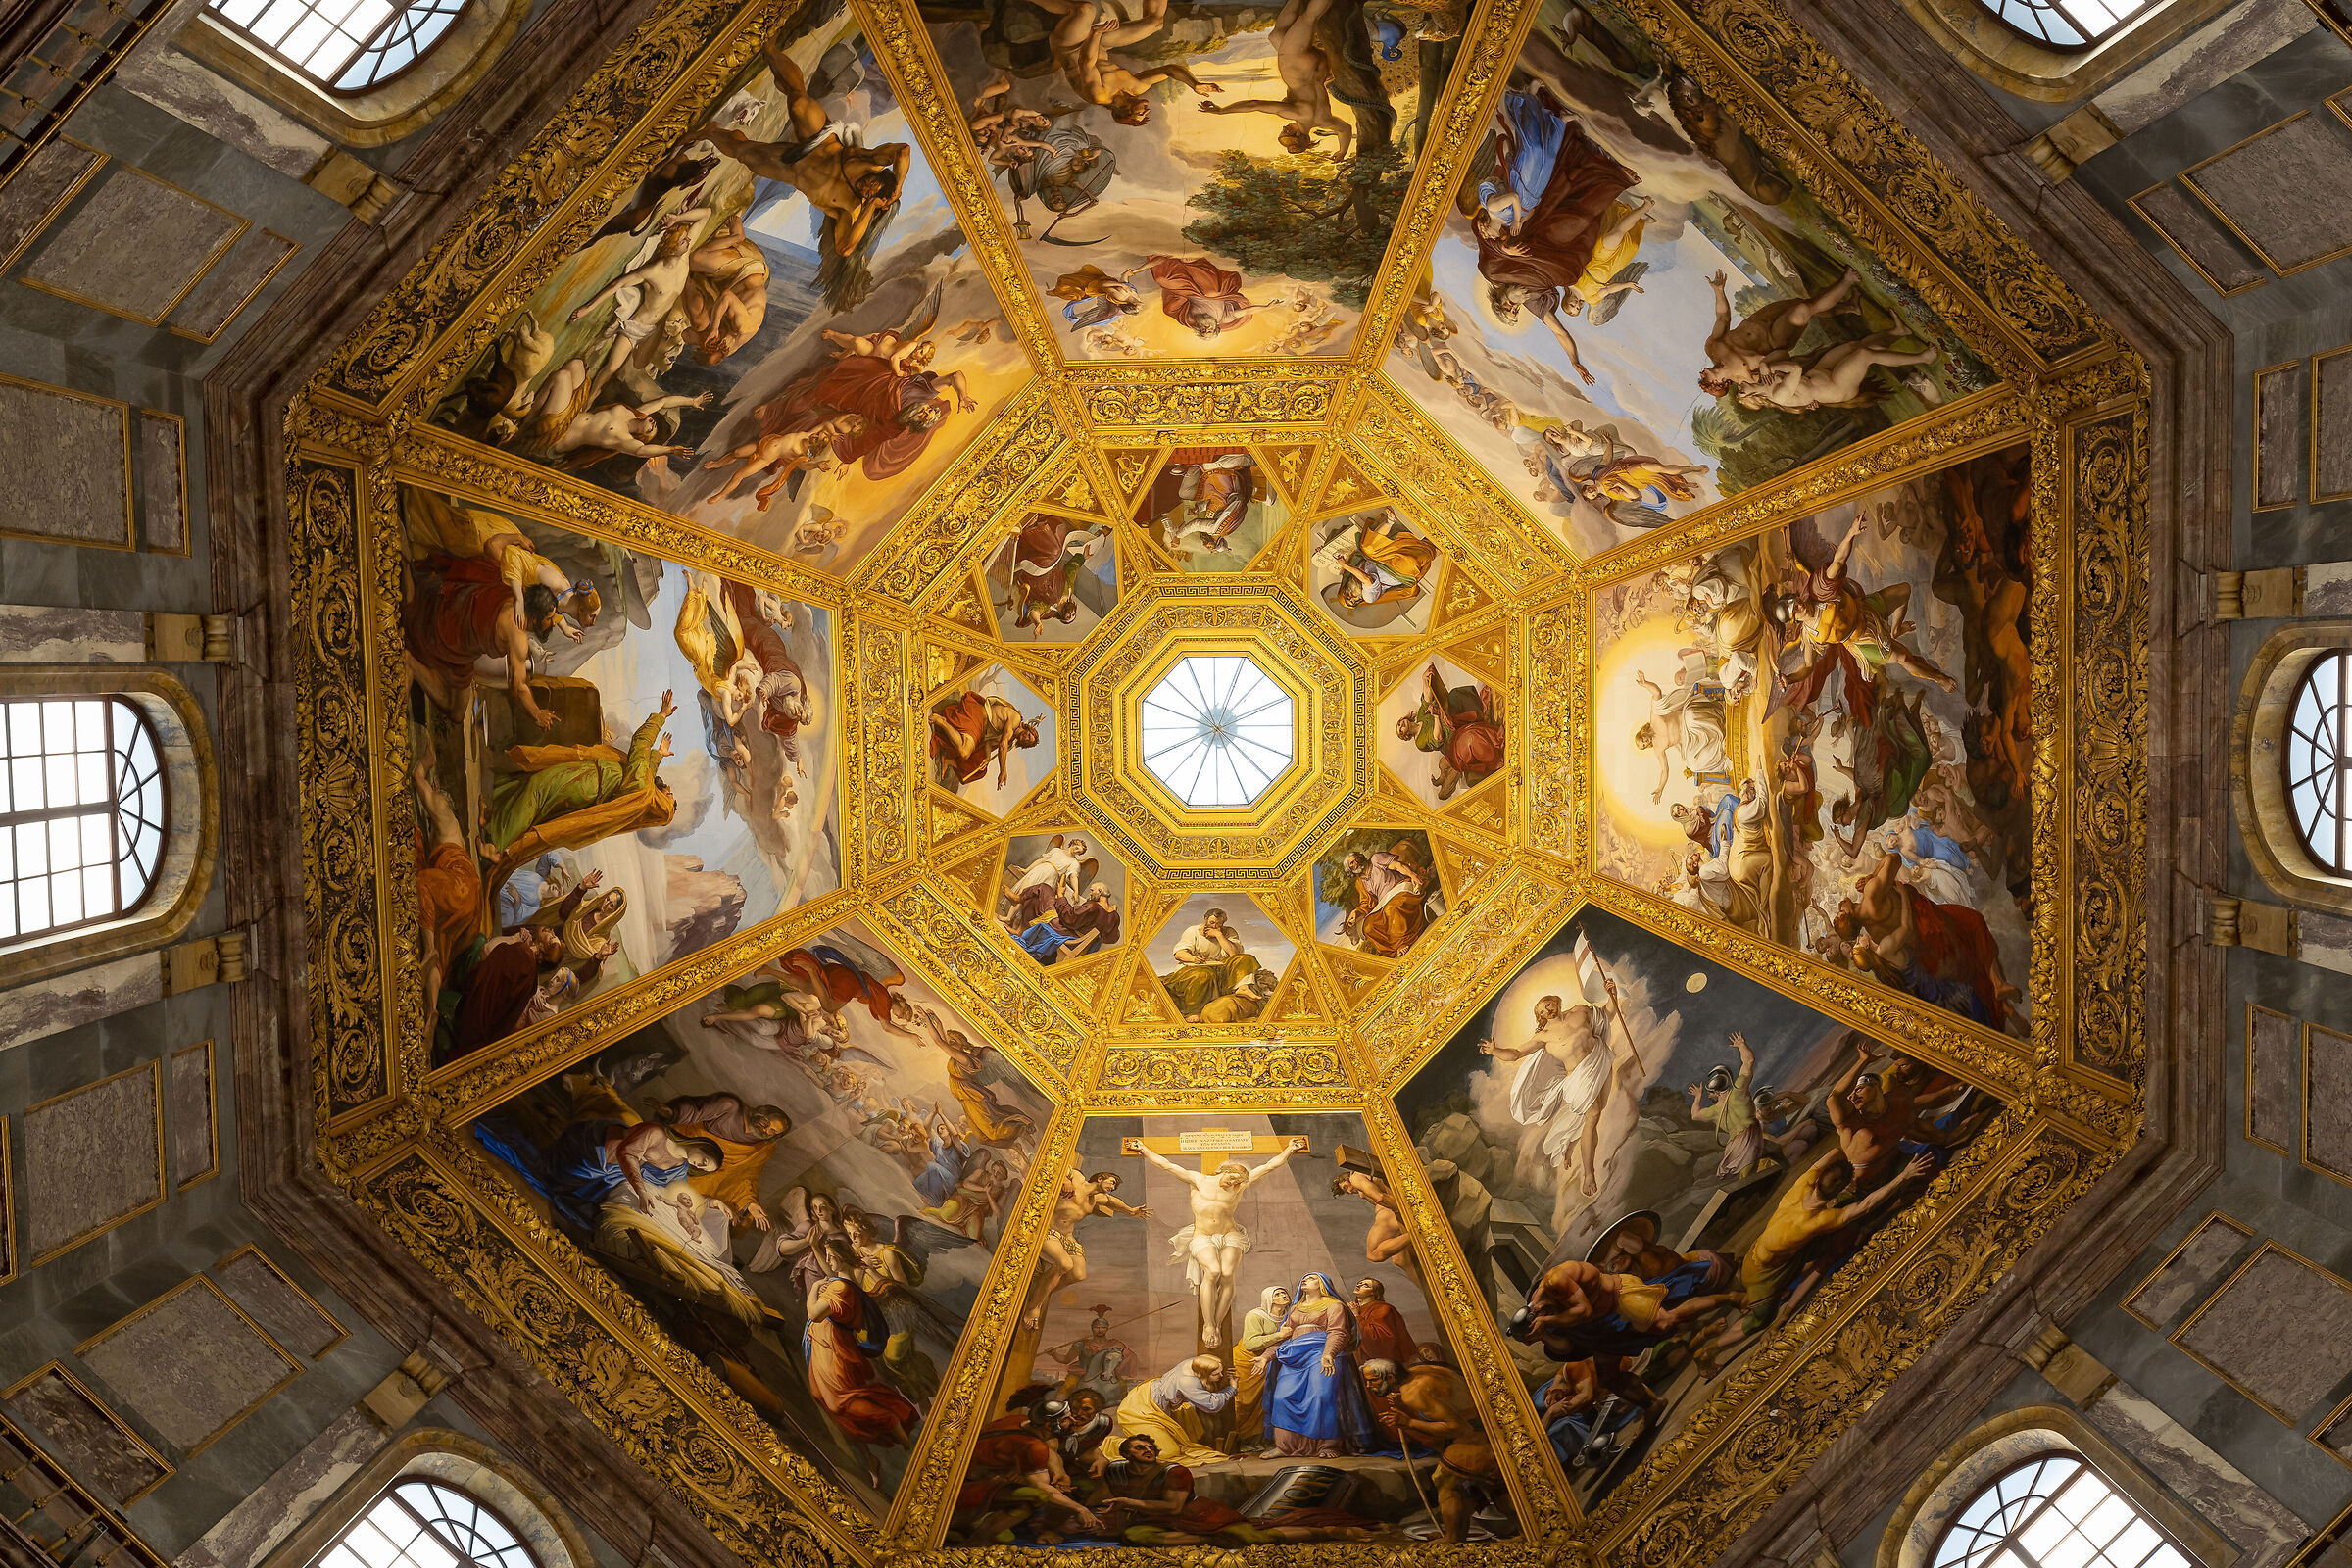 Medici Chapels...